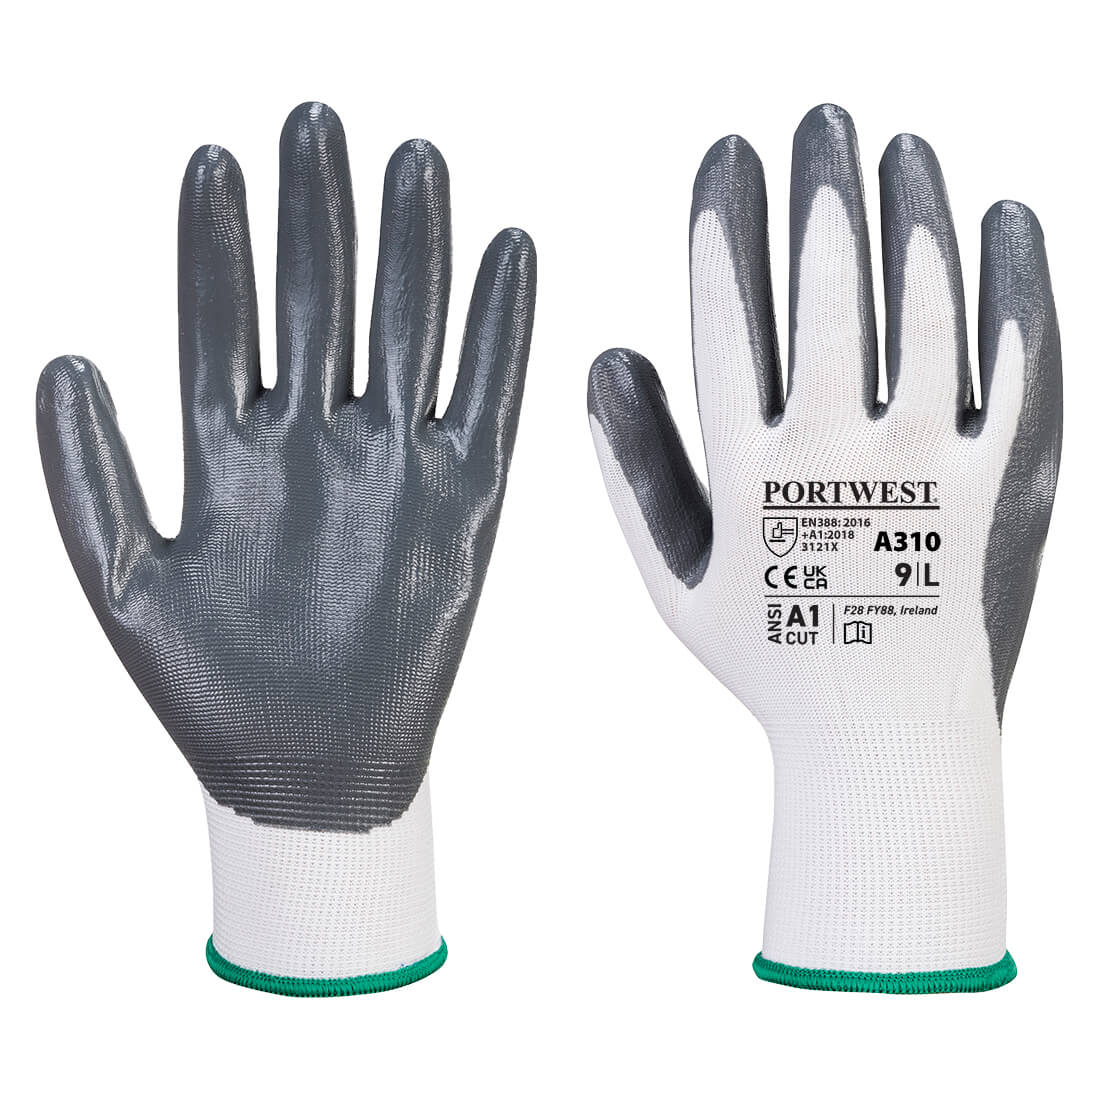 A310 Portwest® Flexo Grip Nitrile Coated Work Gloves